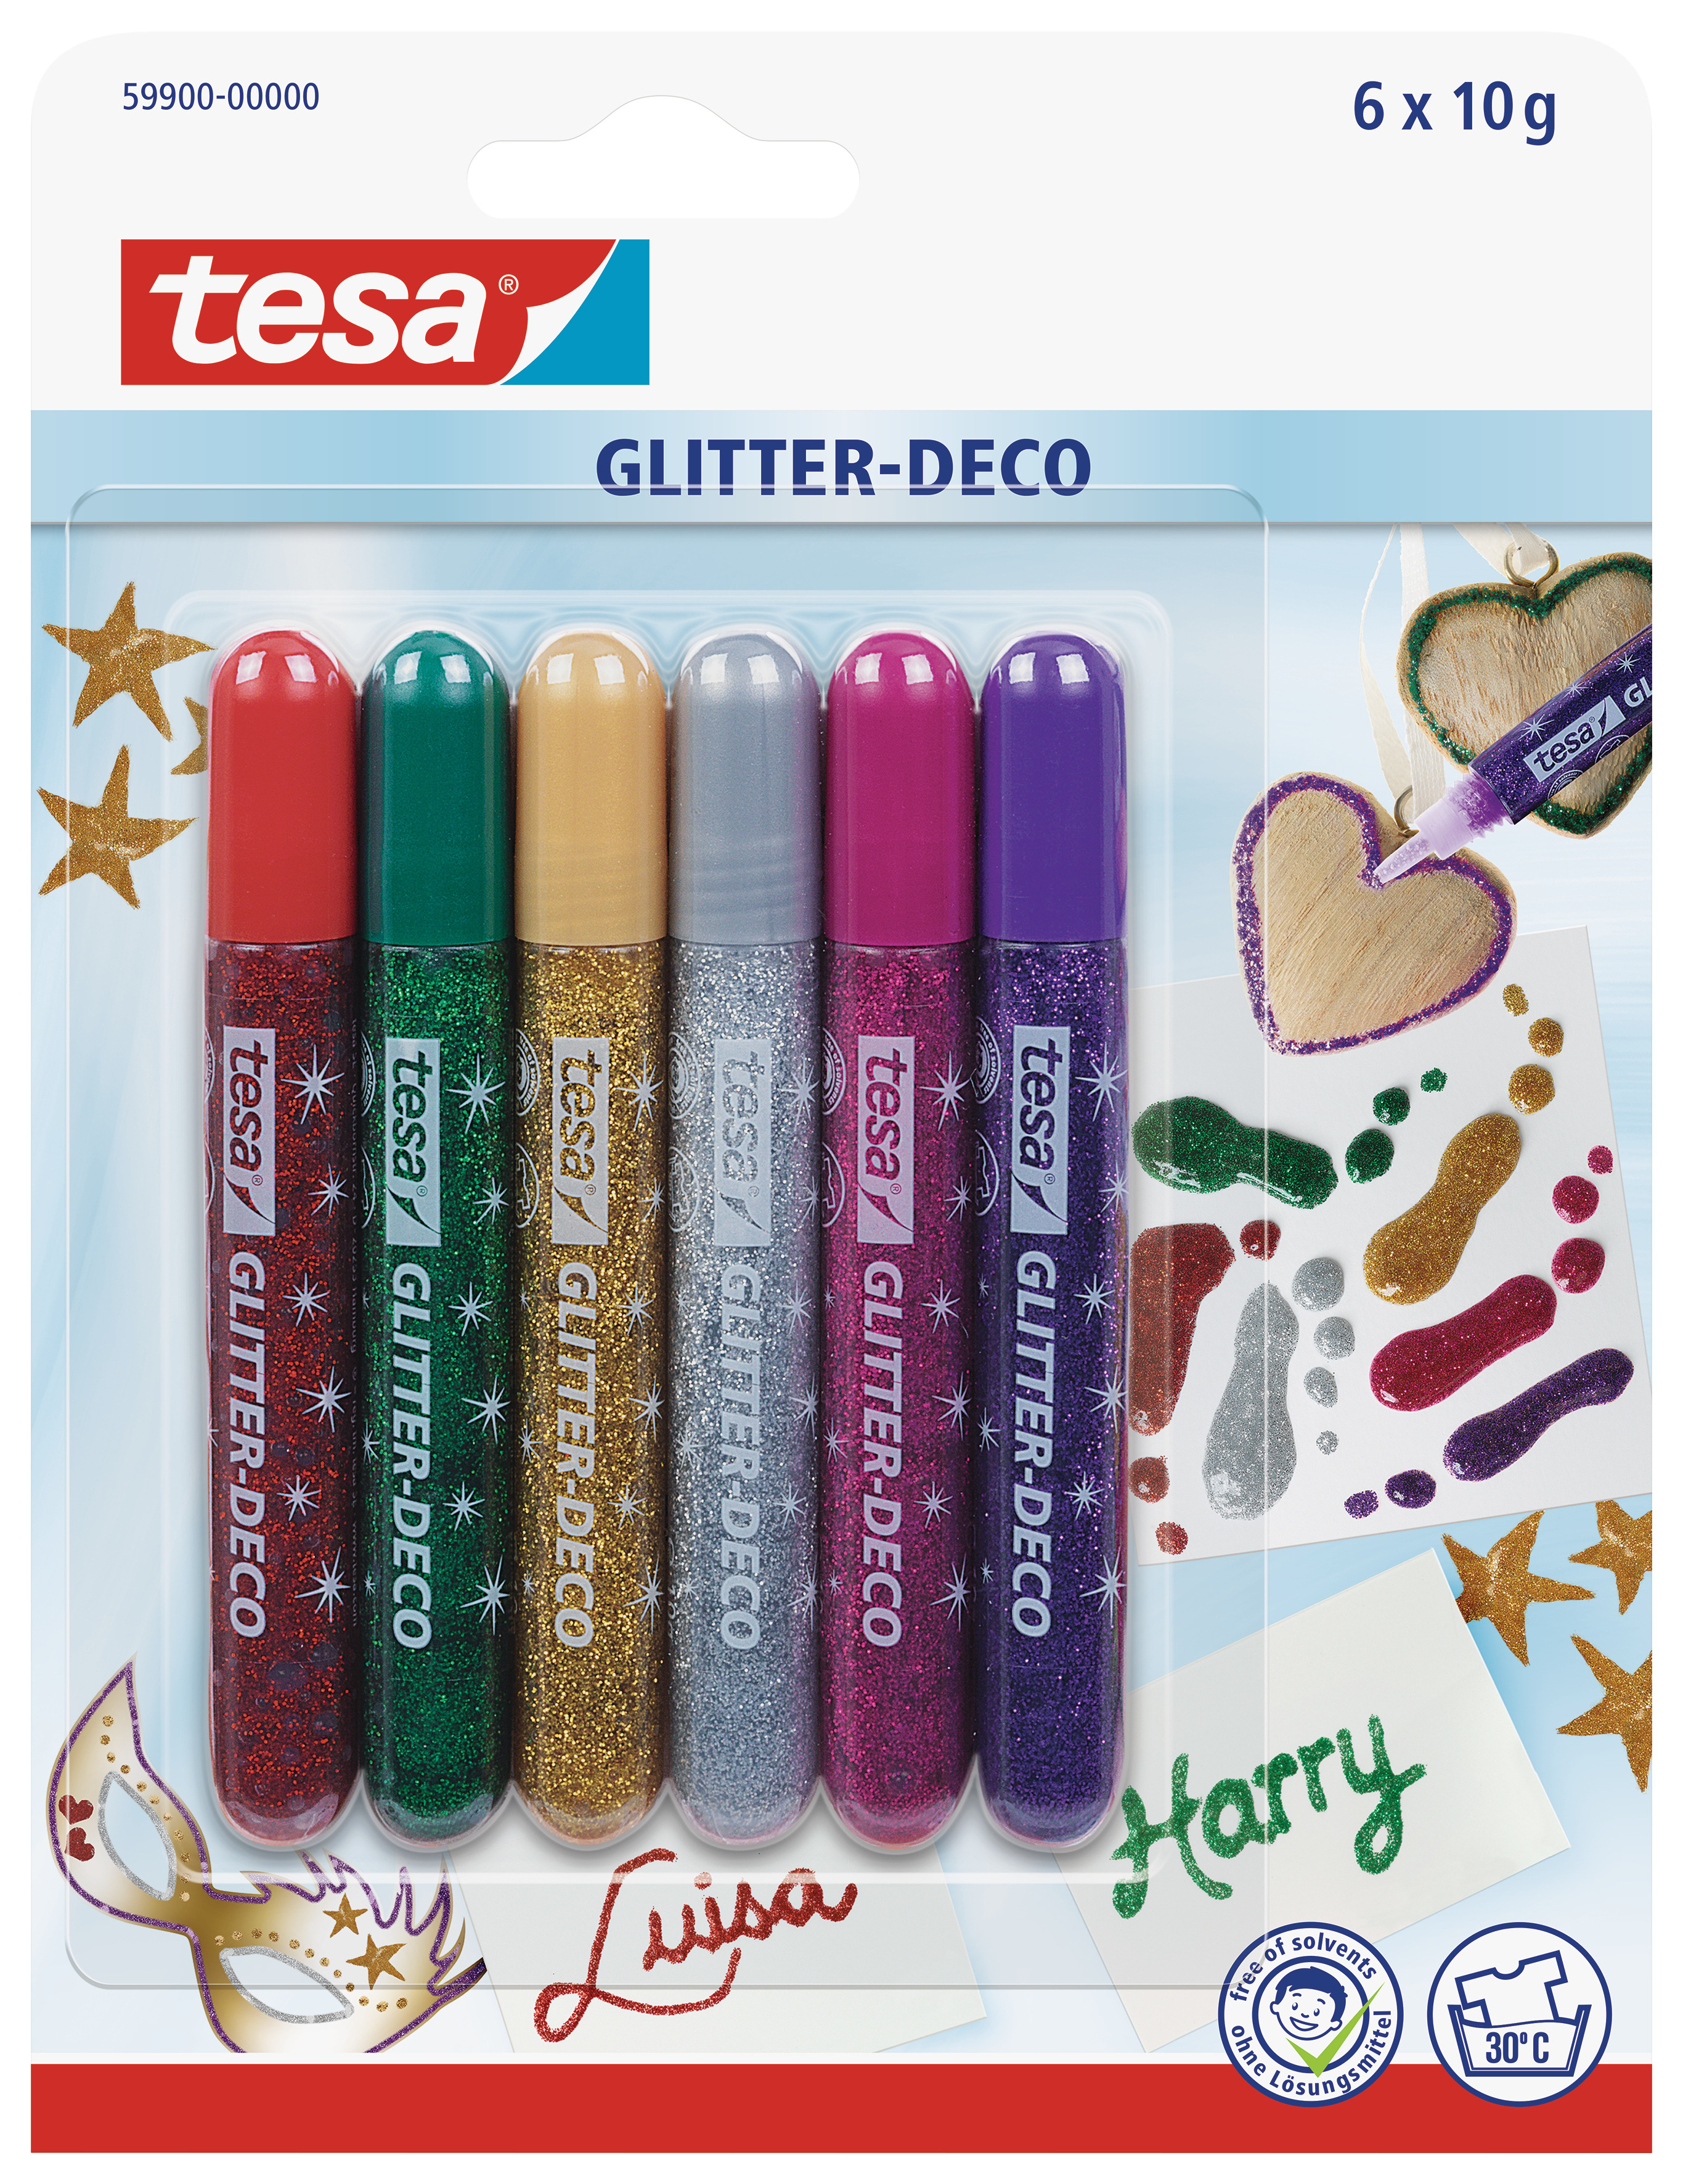 TESA Glitter Deco BrilliaColors 599000000 6x10g 6 pcs.